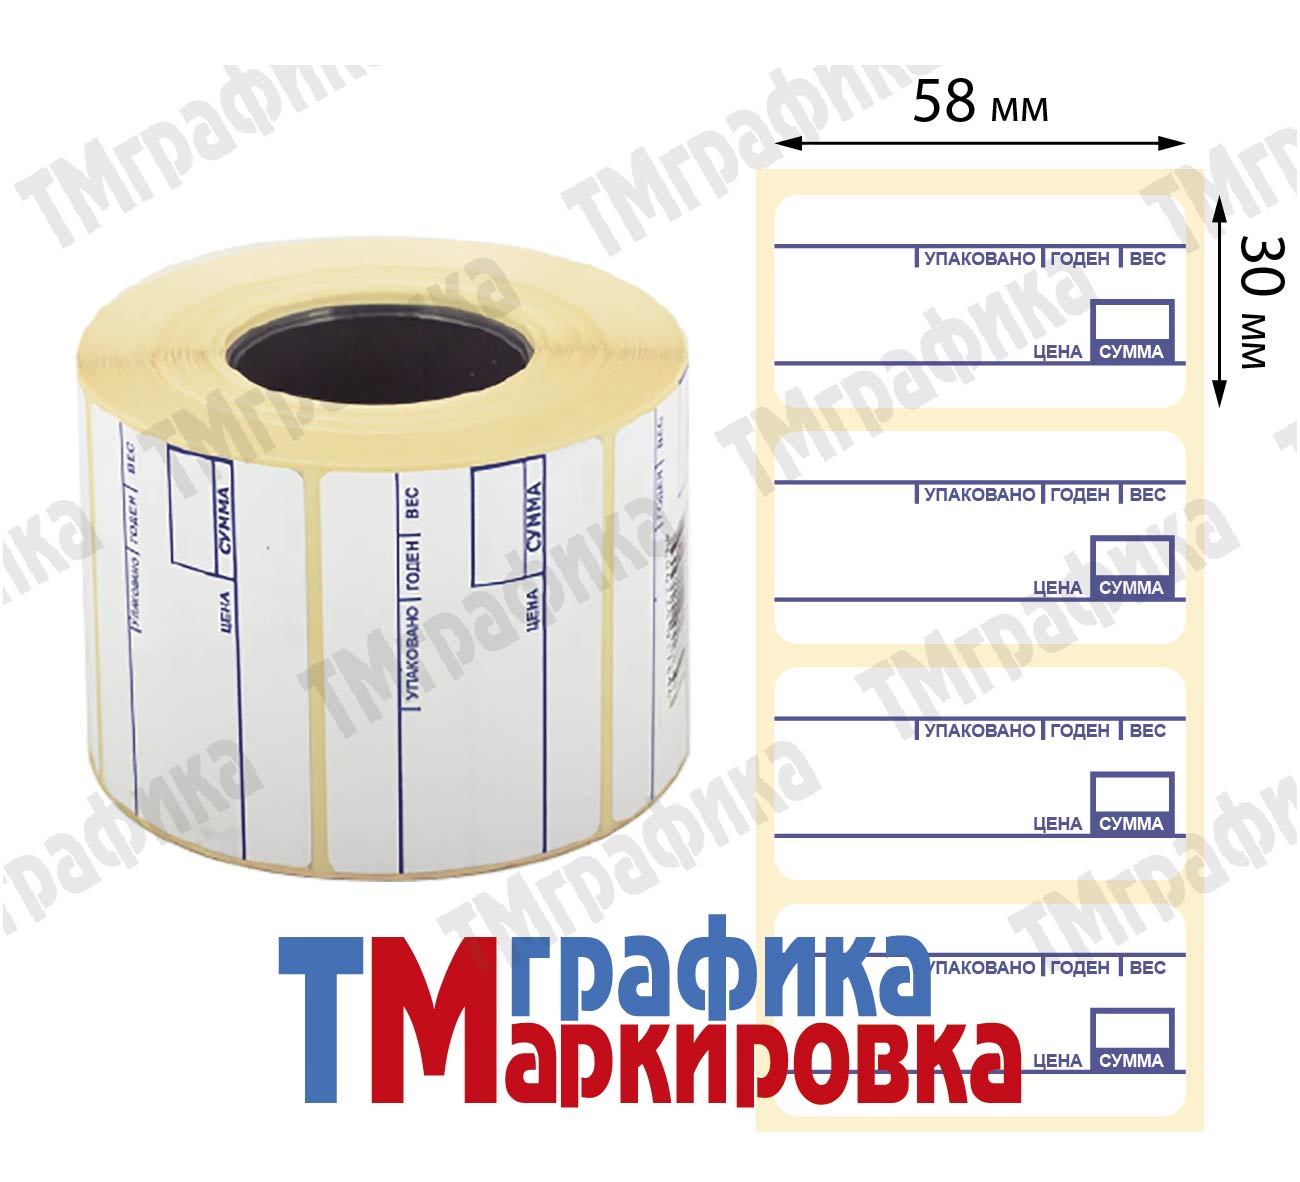 58х30 мм, 900 шт. весовая этикетка Термоэтикетки Эко - 121.05 руб.